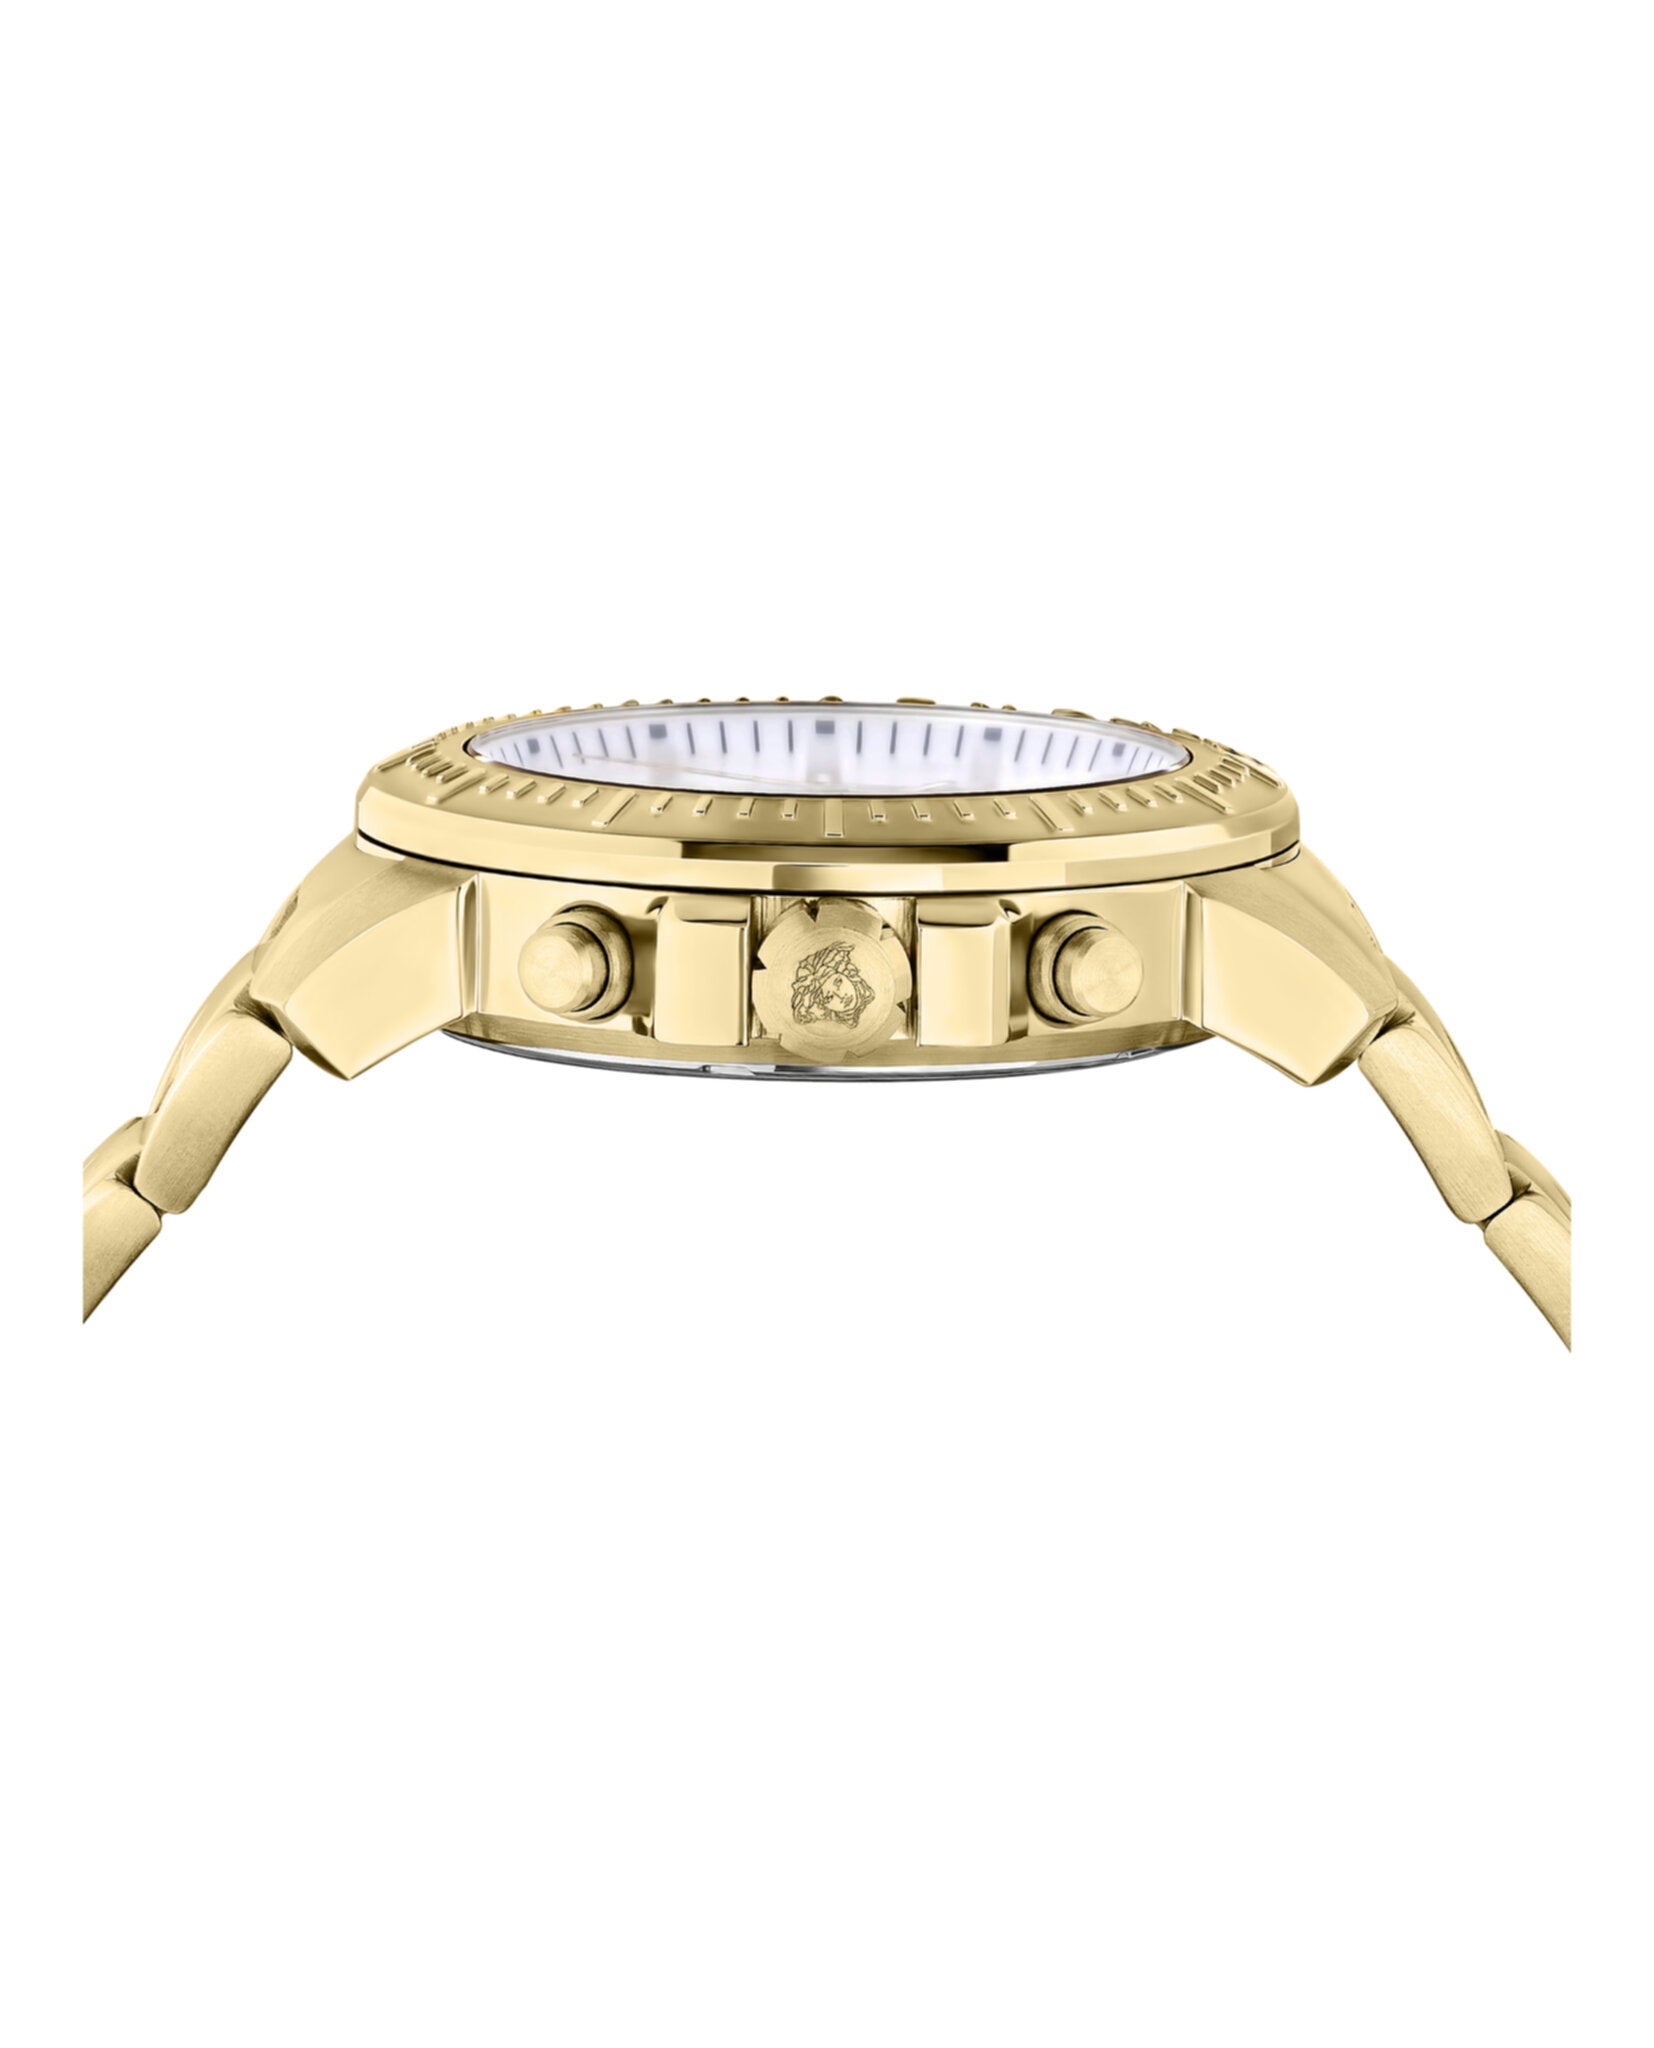 New Chrono Bracelet Watch